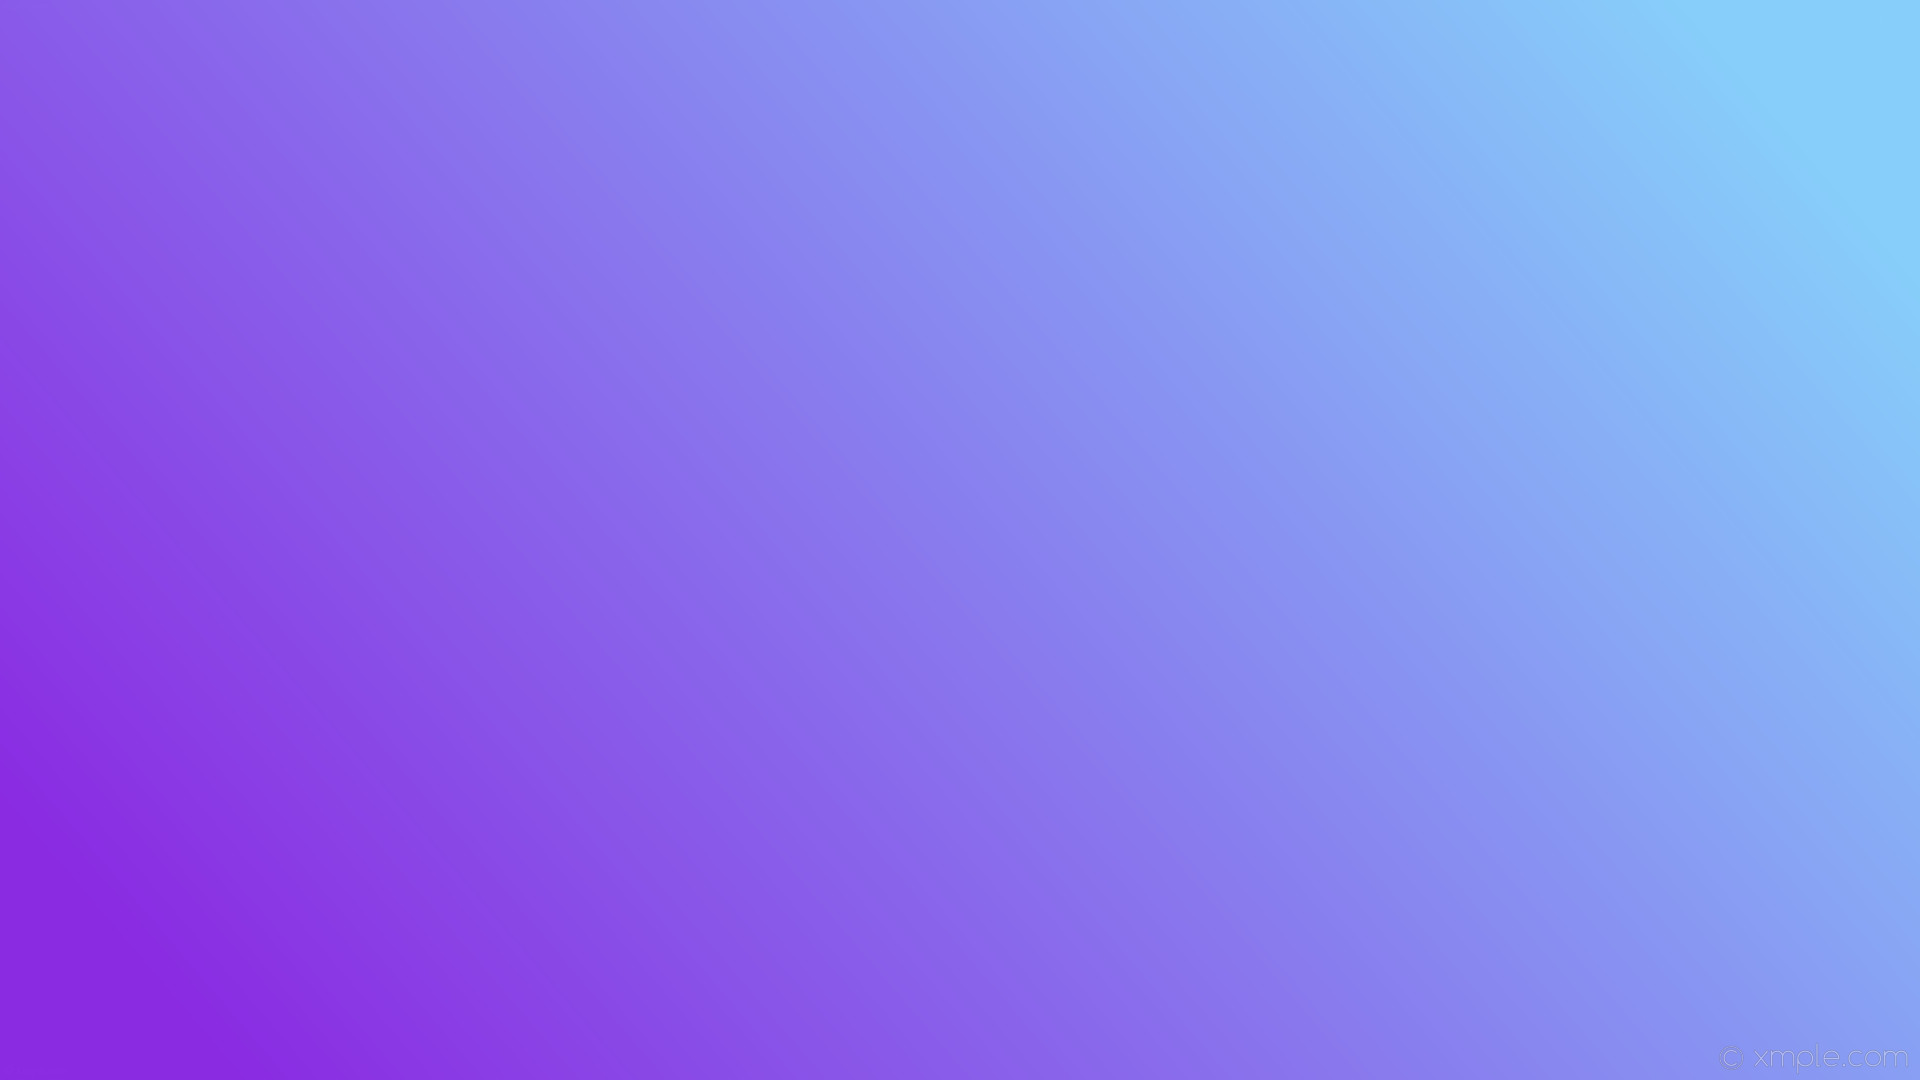 1920x1080 wallpaper blue gradient purple linear light sky blue blue violet #87cefa  #8a2be2 15Â°